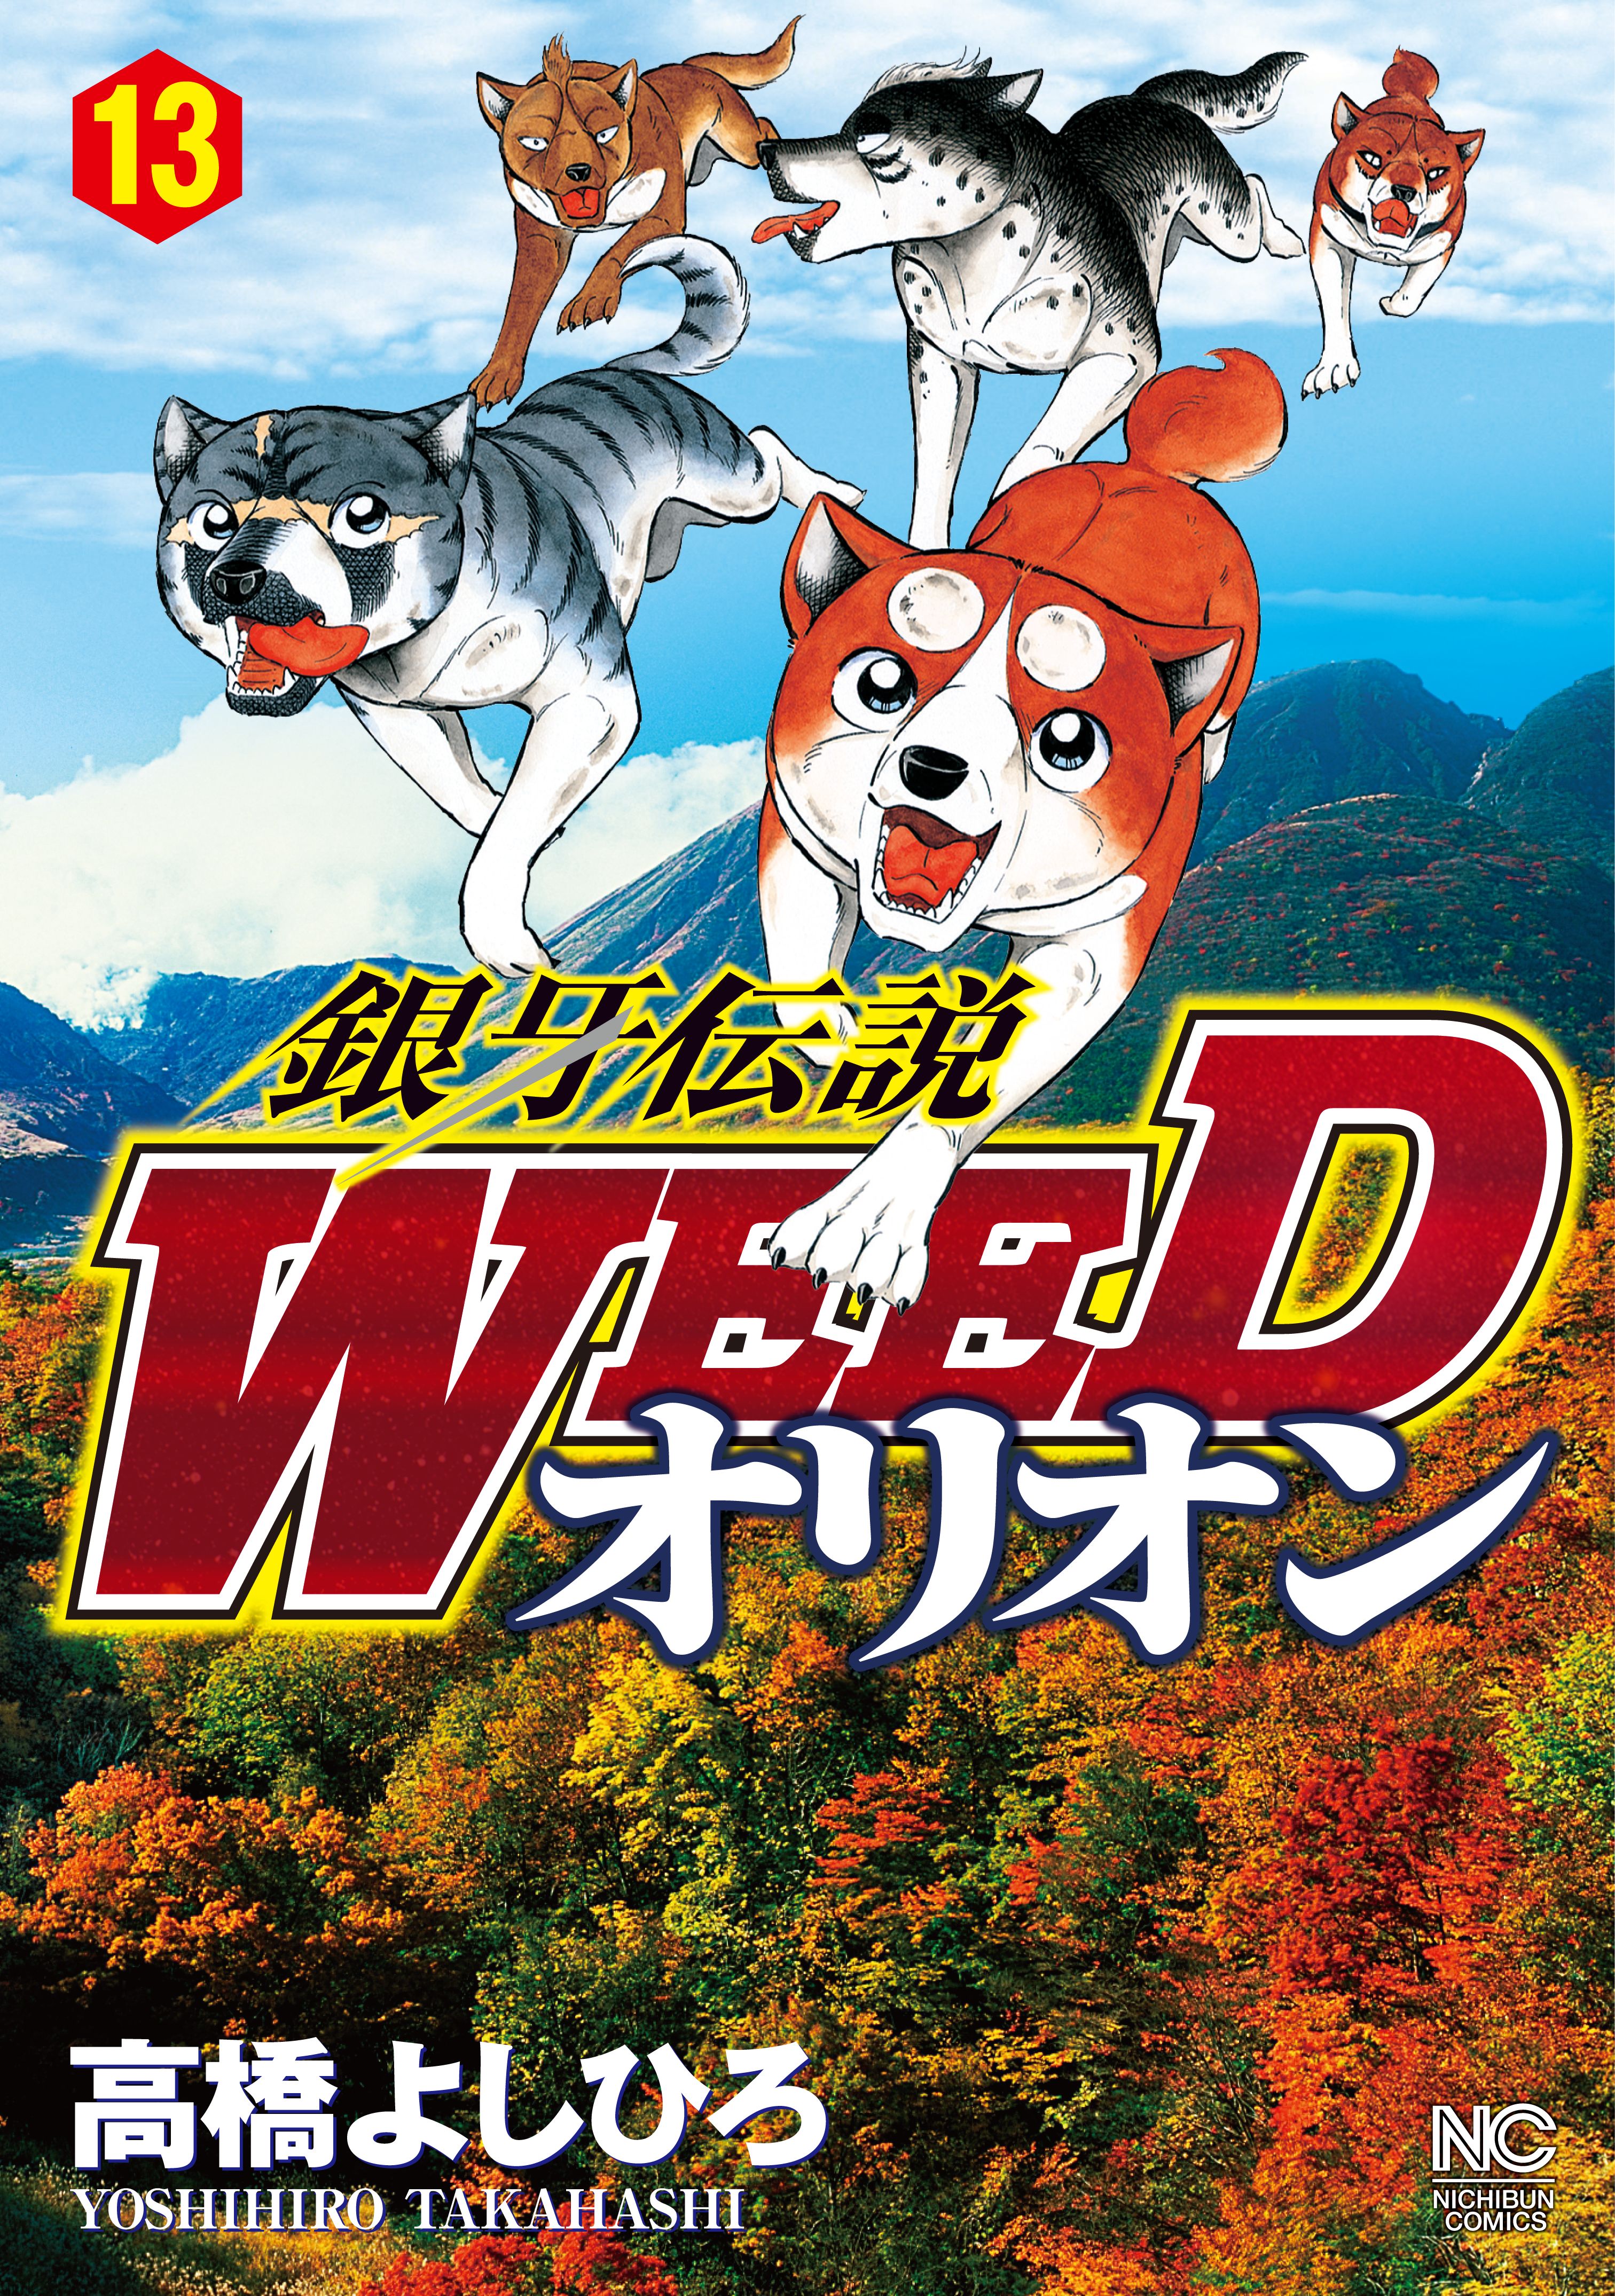 銀牙伝説 WEED ウィード DVD 全13巻 セット 流れ星銀